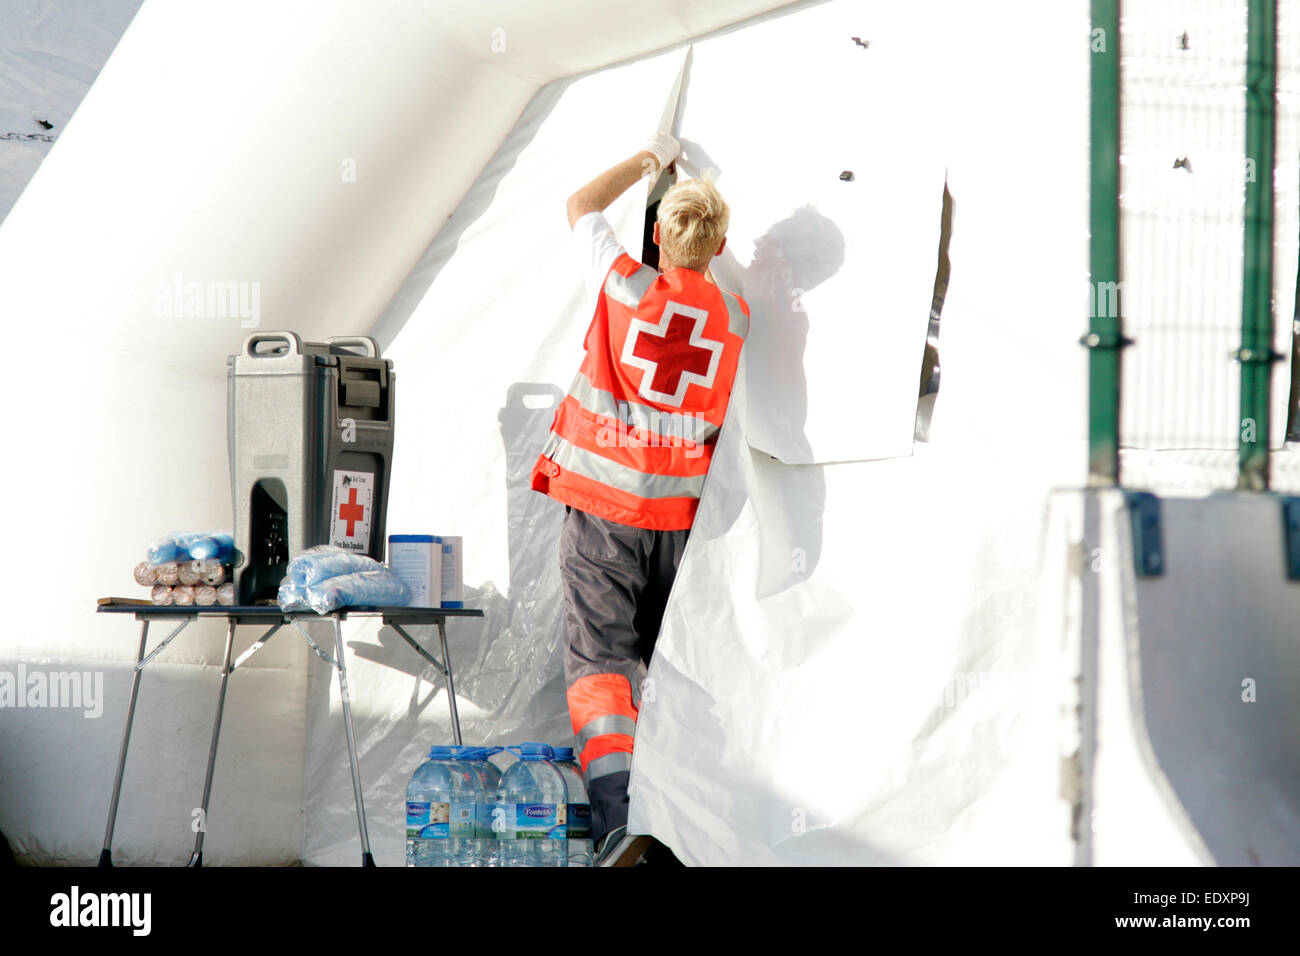 La croix rouge espagnole se ferme au travailleur d'aide gonflable aire de quarantaine utilisée pour décontaminer les migrants africains illégaux Banque D'Images